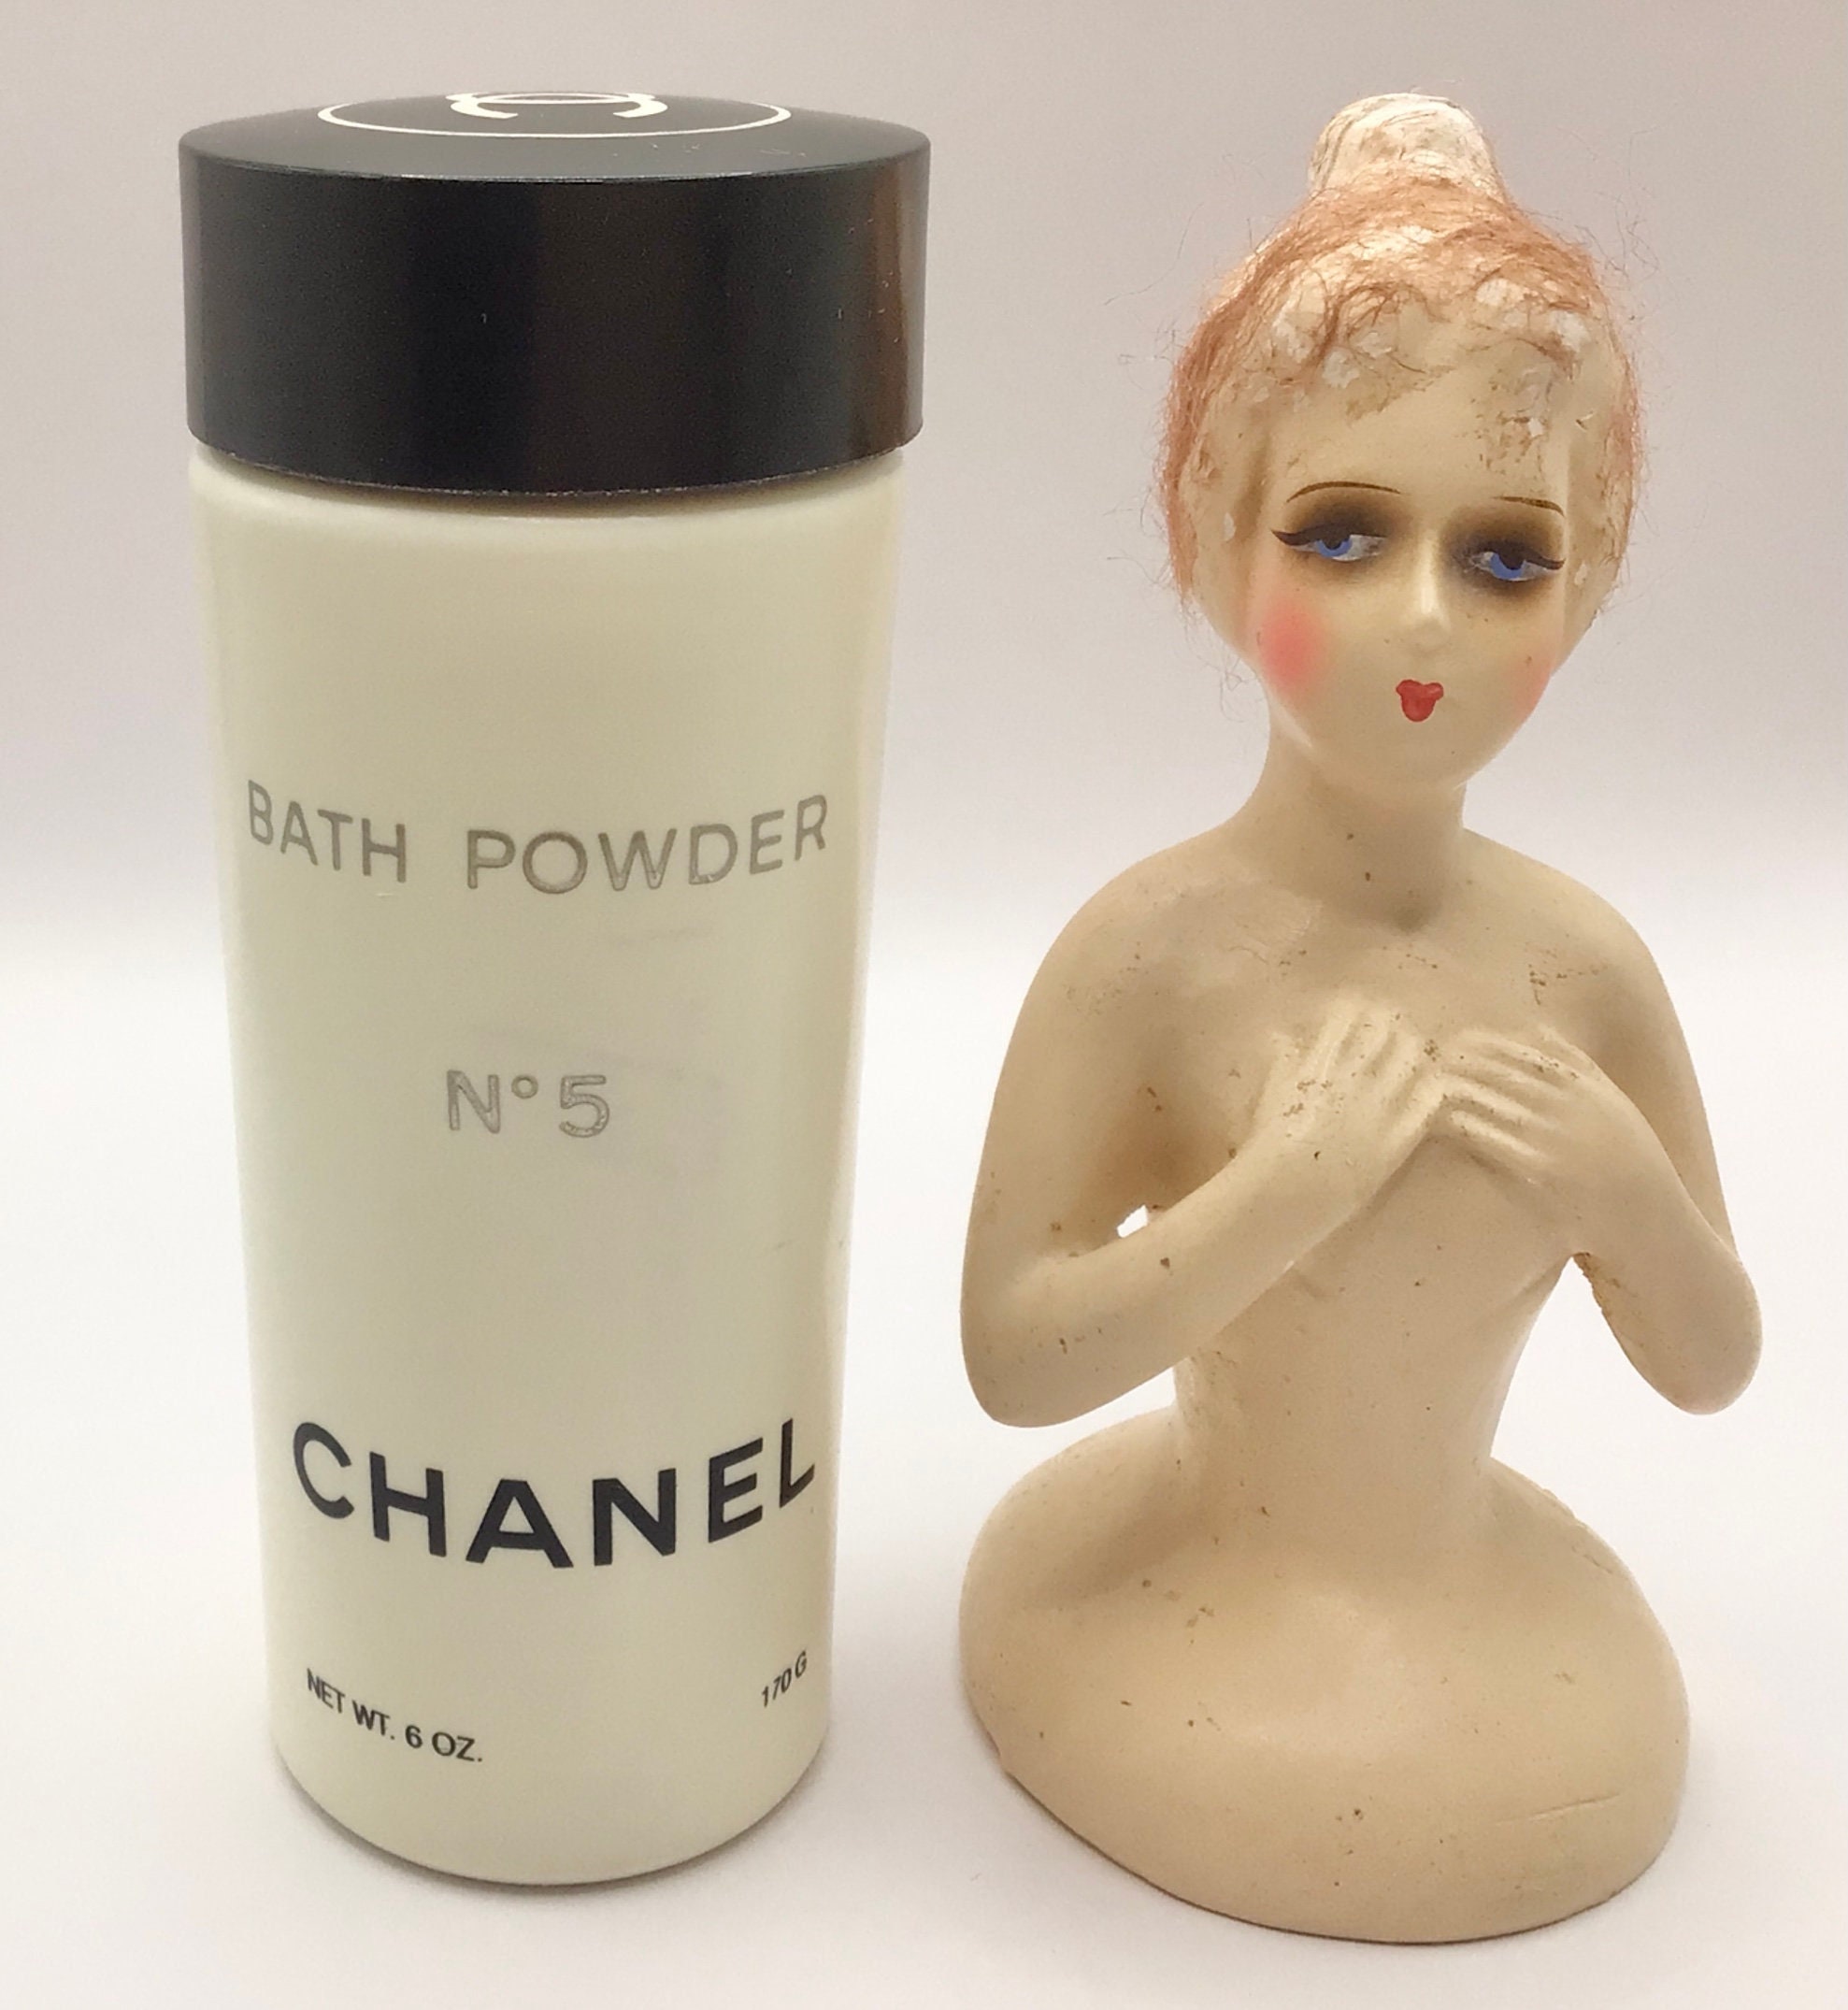 chanel 5 bath powder